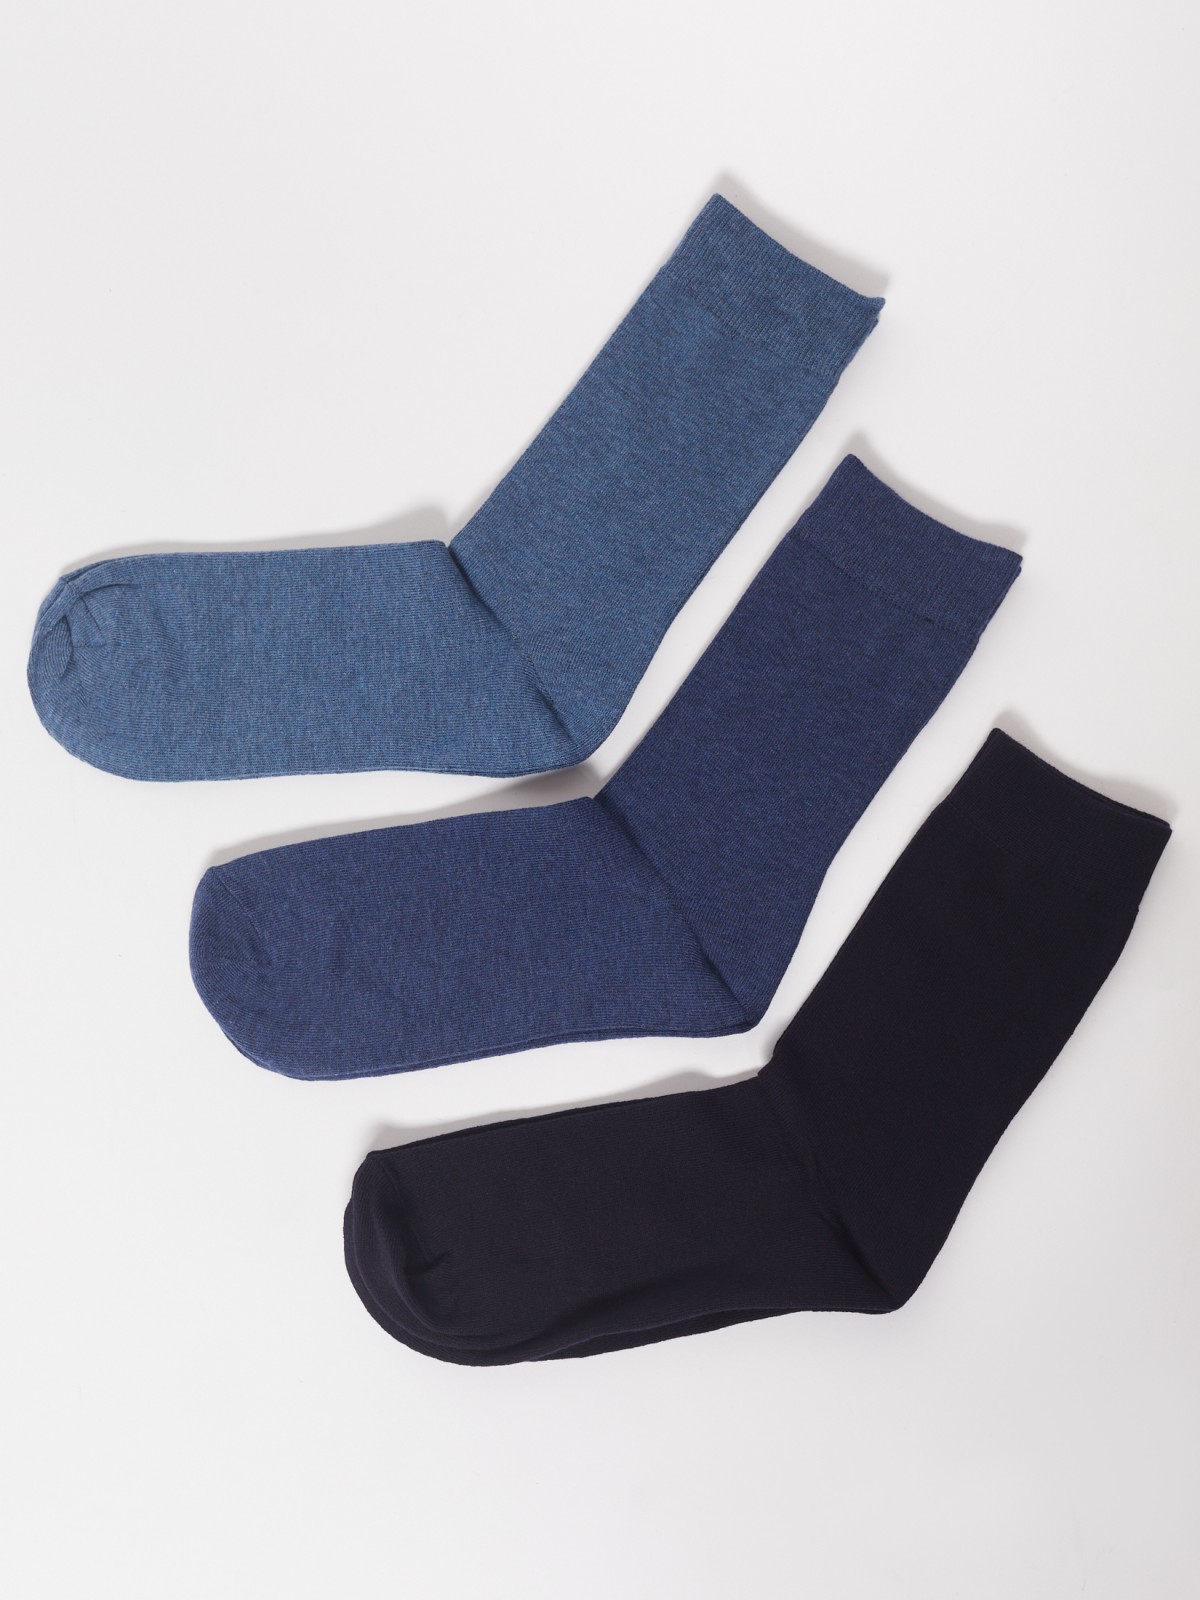 Набор высоких носков (3 пары в комплекте) zolla 01311998J025, цвет темно-синий, размер 25-27